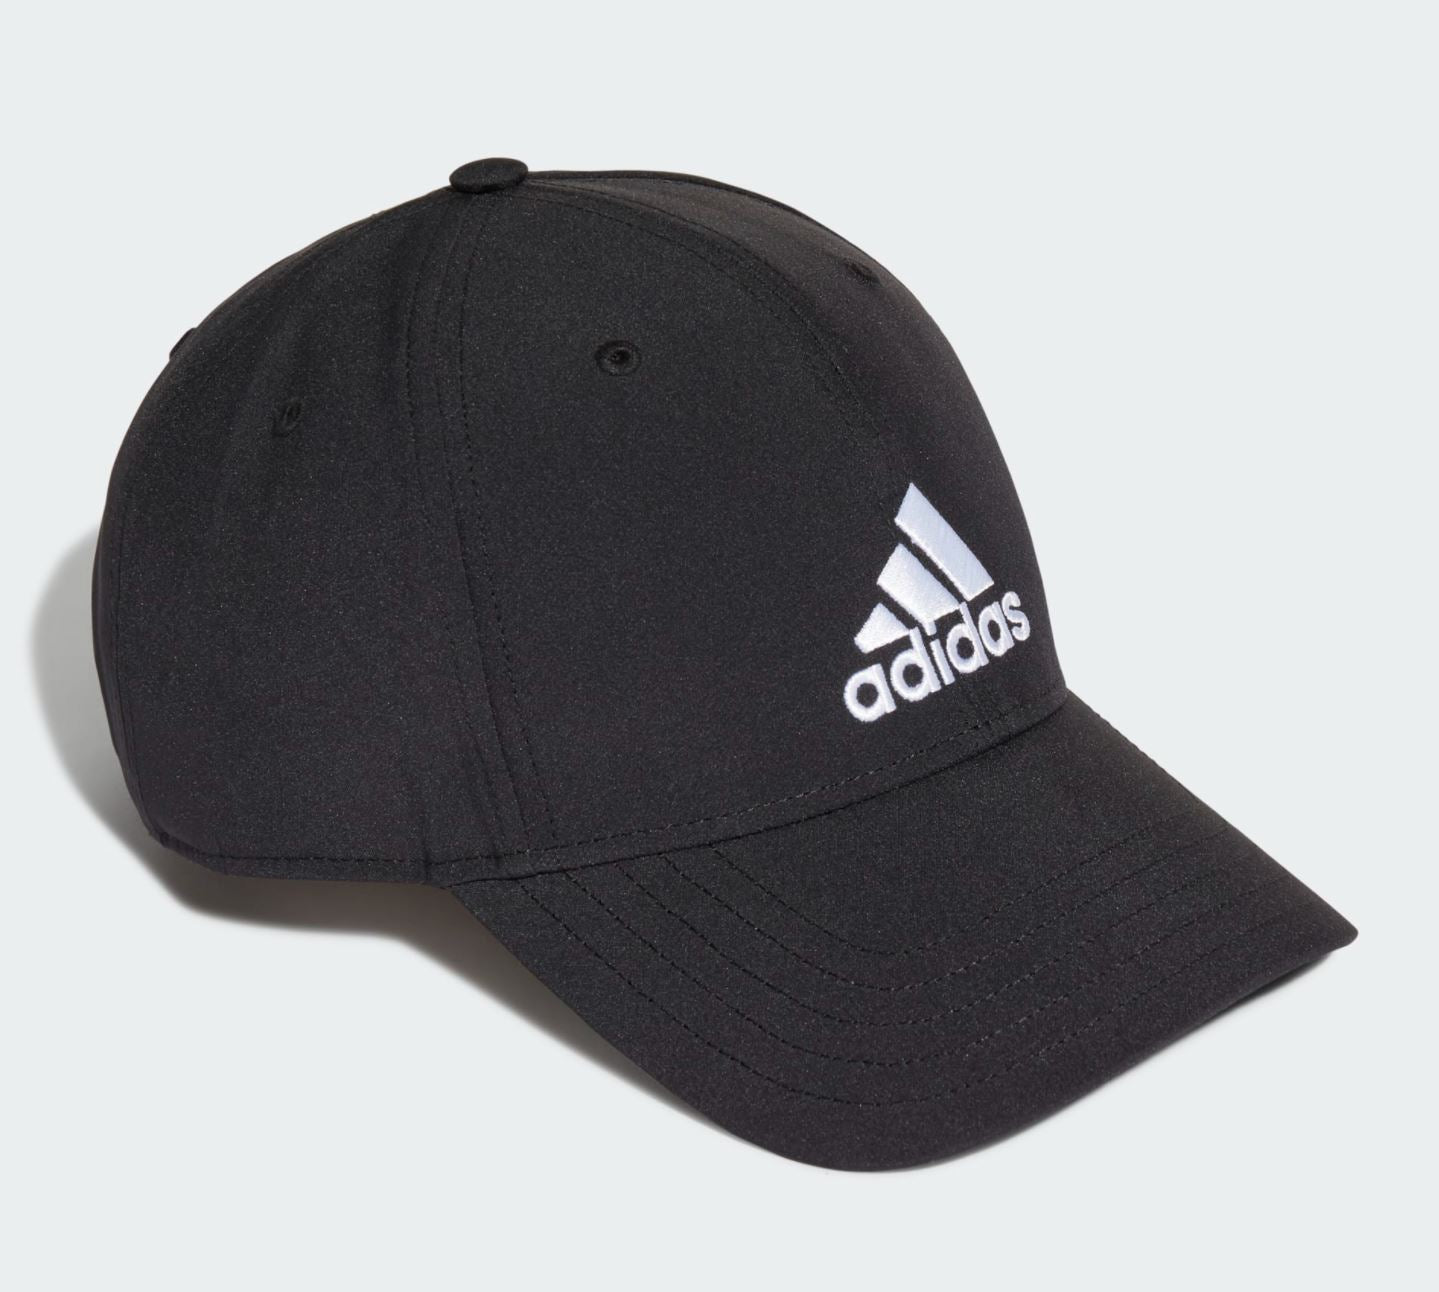 Adidas Baseball Cap (Black)